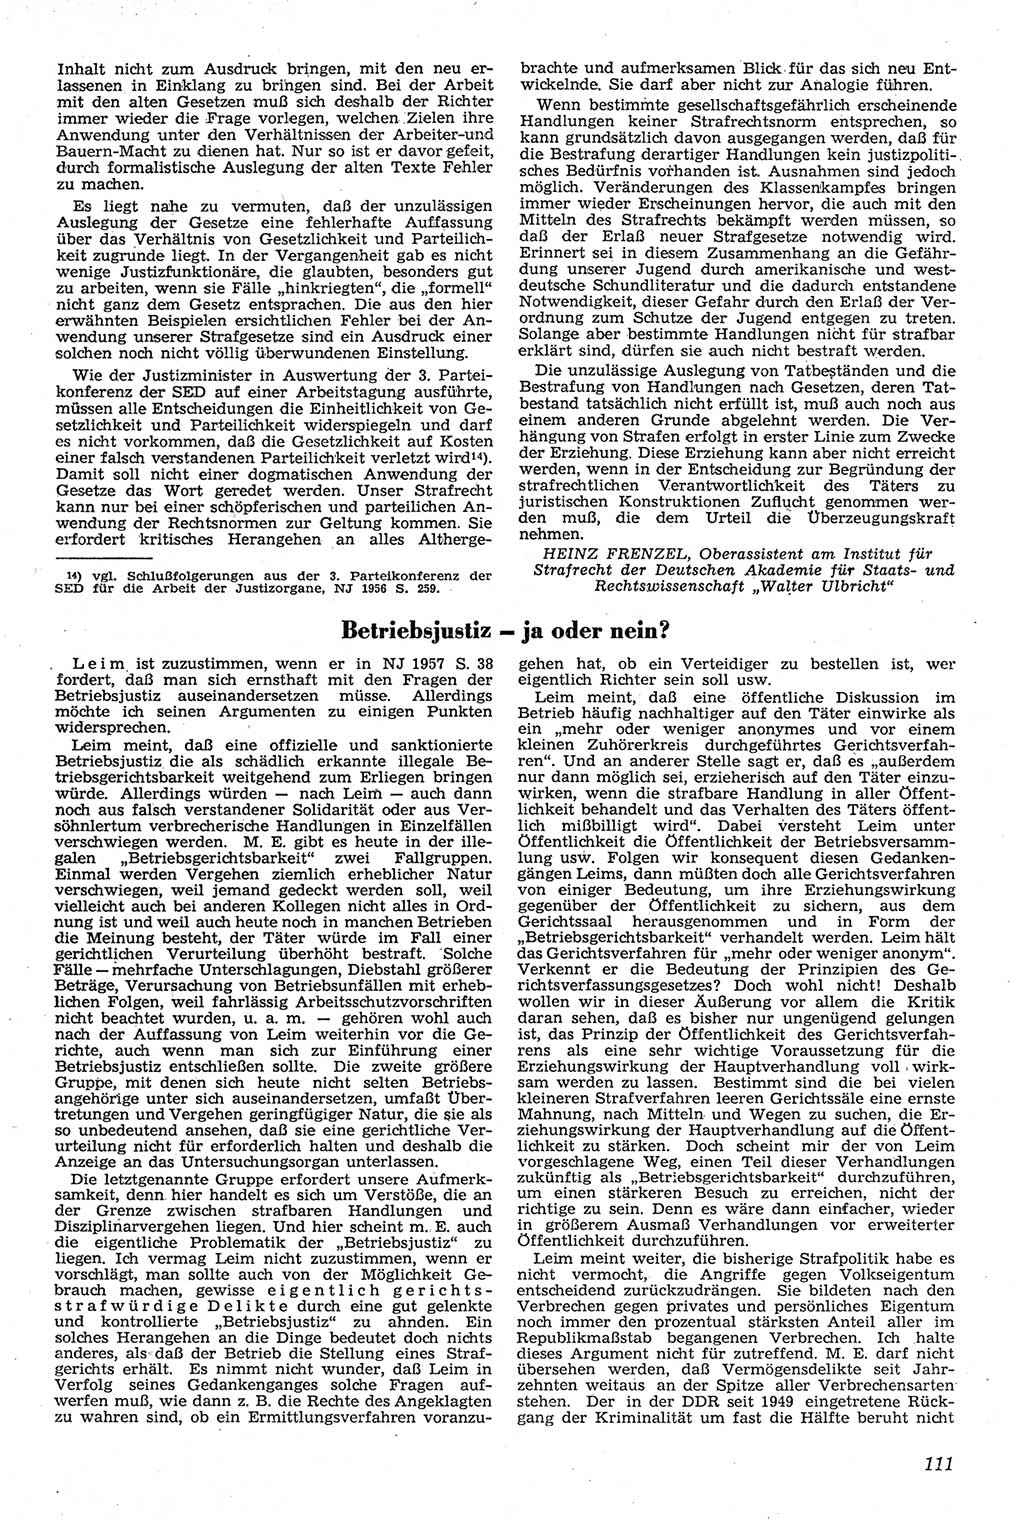 Neue Justiz (NJ), Zeitschrift für Recht und Rechtswissenschaft [Deutsche Demokratische Republik (DDR)], 11. Jahrgang 1957, Seite 111 (NJ DDR 1957, S. 111)